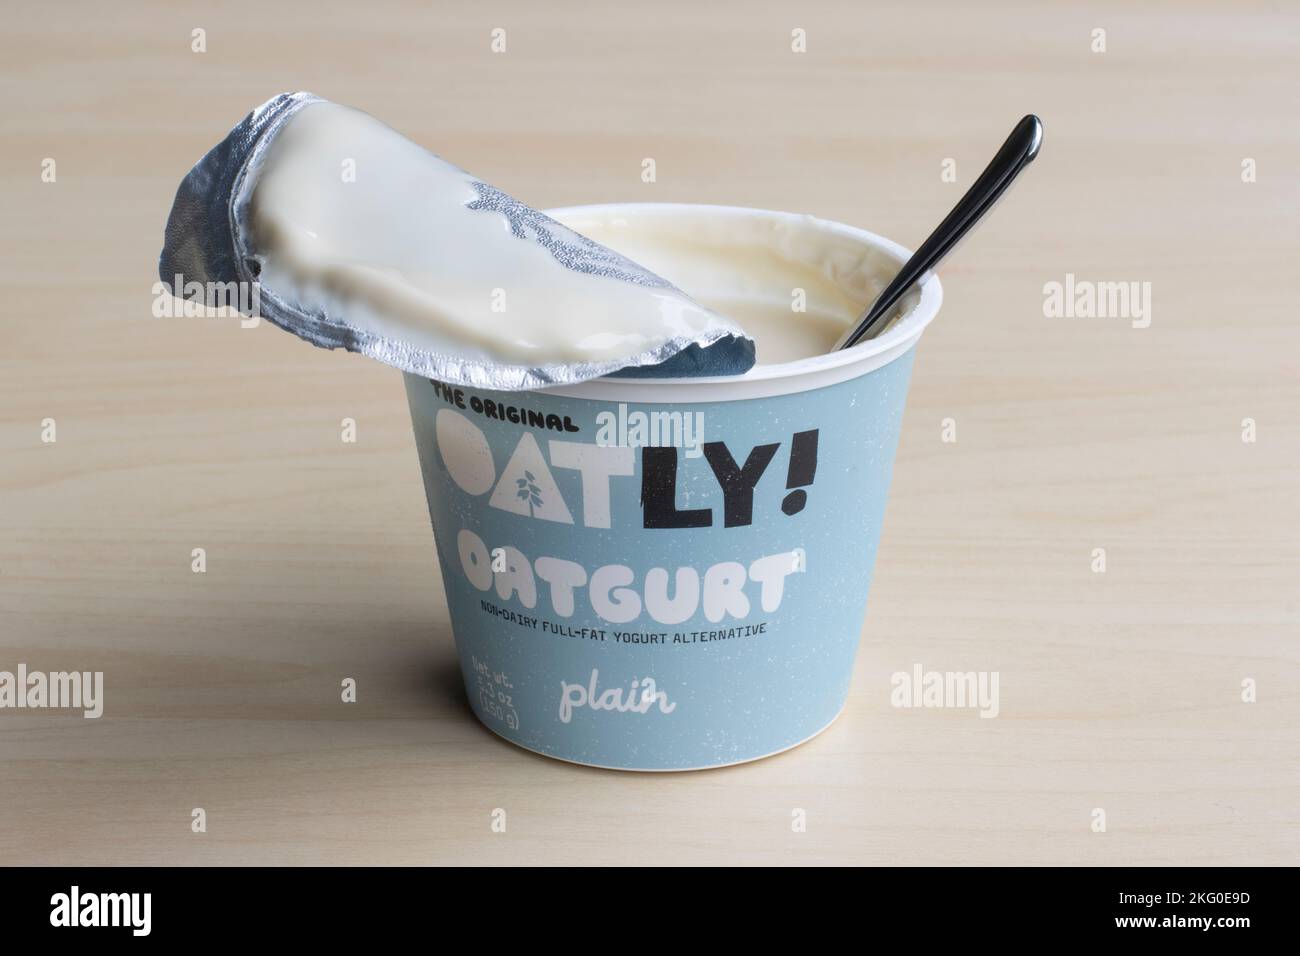 Une tasse d'oatgurt ordinaire de marque Oatly, une alternative de yaourt à la graisse non laitière produite par Oatly Group AB, avec une cuillère en elle, isolée sur fond de bois. Banque D'Images